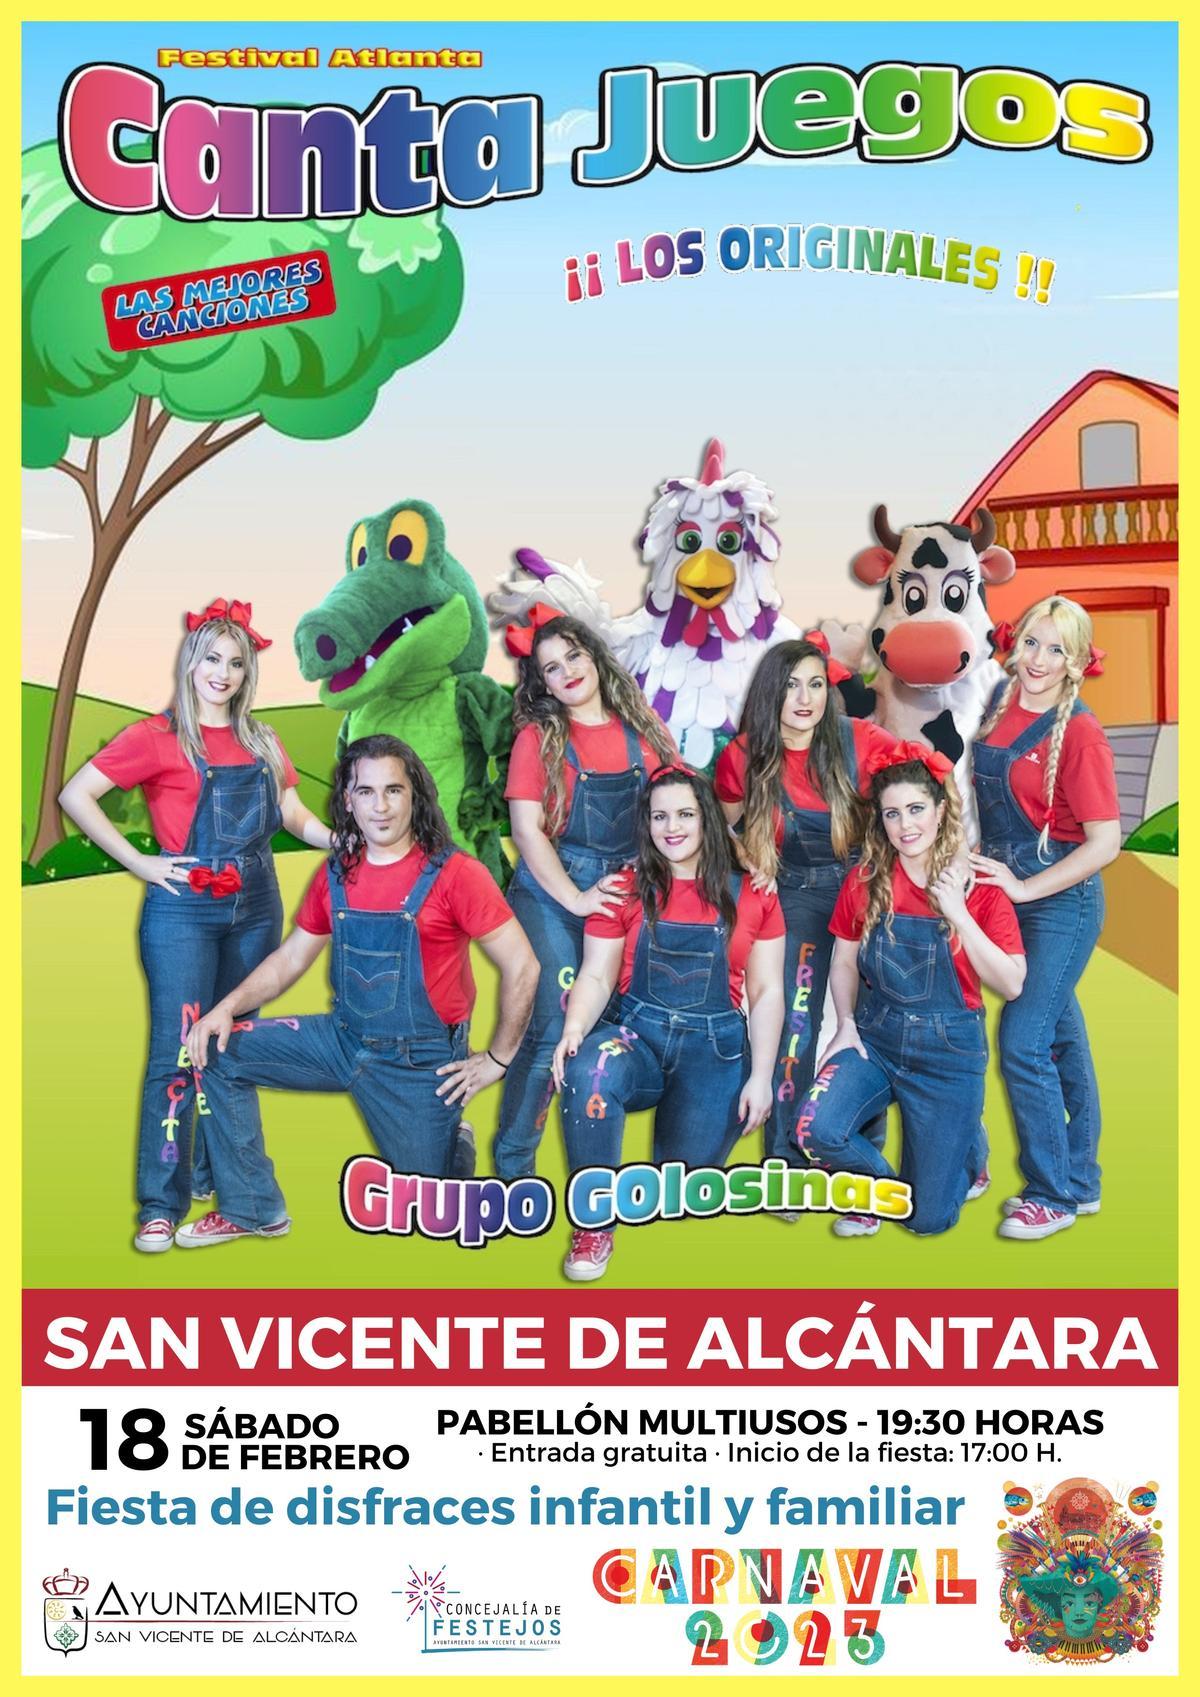 Cartel de los Canta Juegos en San Vicente de Alcántara.